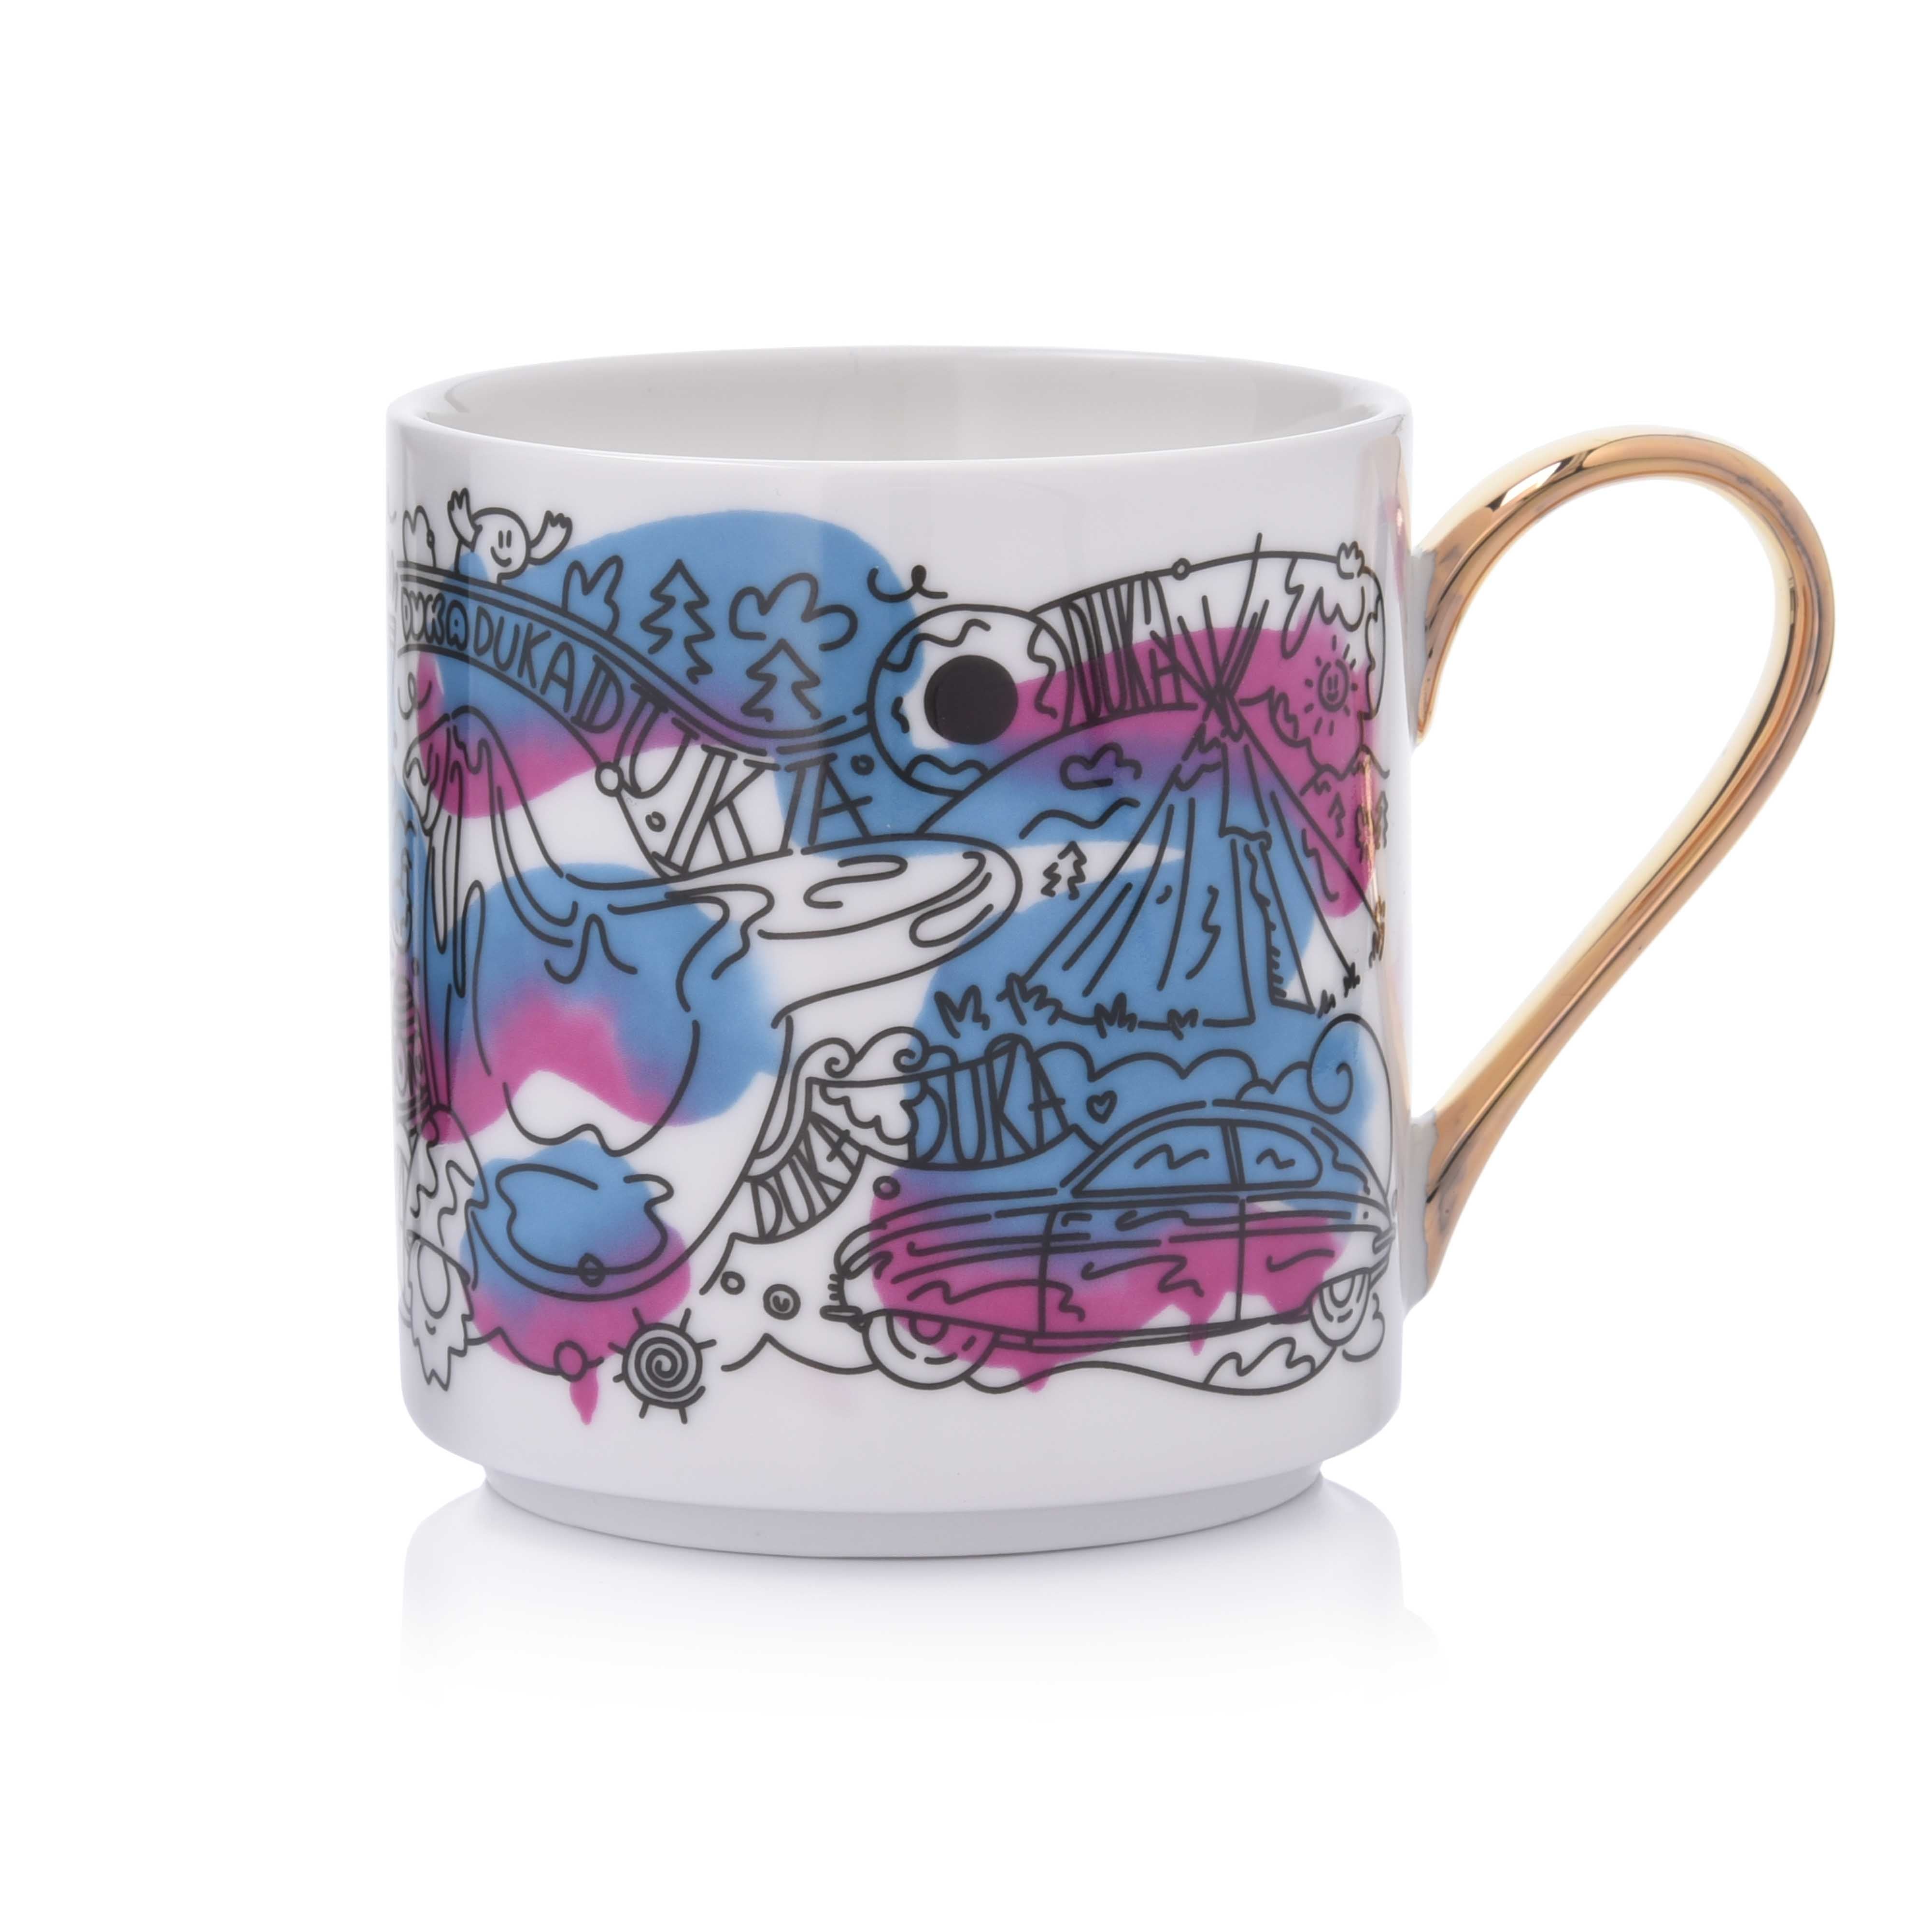 Mix and Match Street Art Mug and Teapot Set